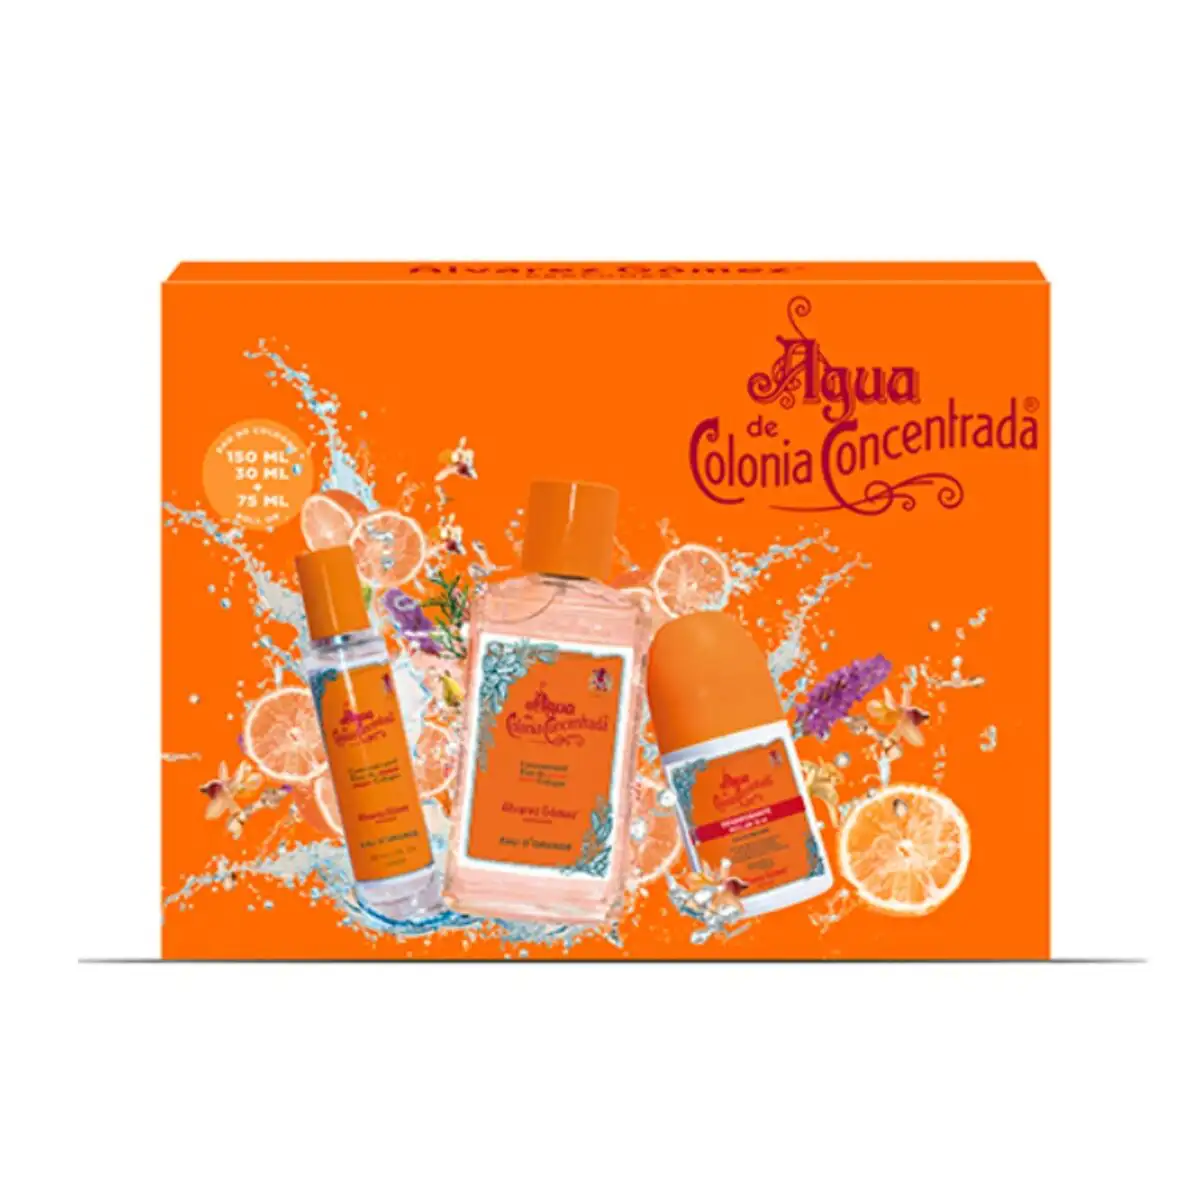 Set de parfum unisexe alvarez gomez orange agua de colonia concentrada 3 pieces_1962. DIAYTAR SENEGAL - Où Choisir Devient un Plaisir. Découvrez notre boutique en ligne et choisissez parmi une variété de produits qui satisferont tous vos besoins.